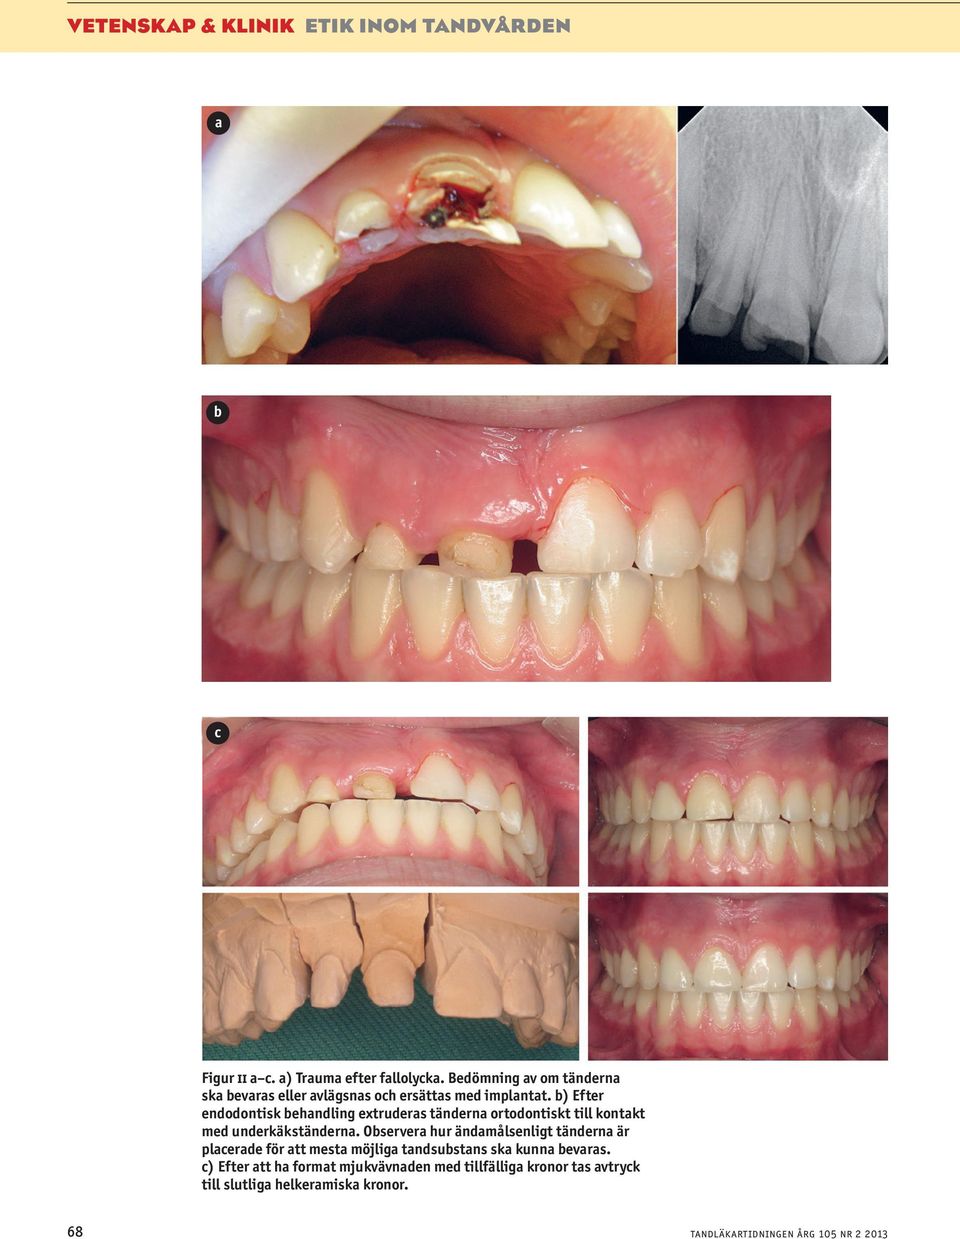 b) Efter endodontisk behandling extruderas tänderna ortodontiskt till kontakt med underkäkständerna.